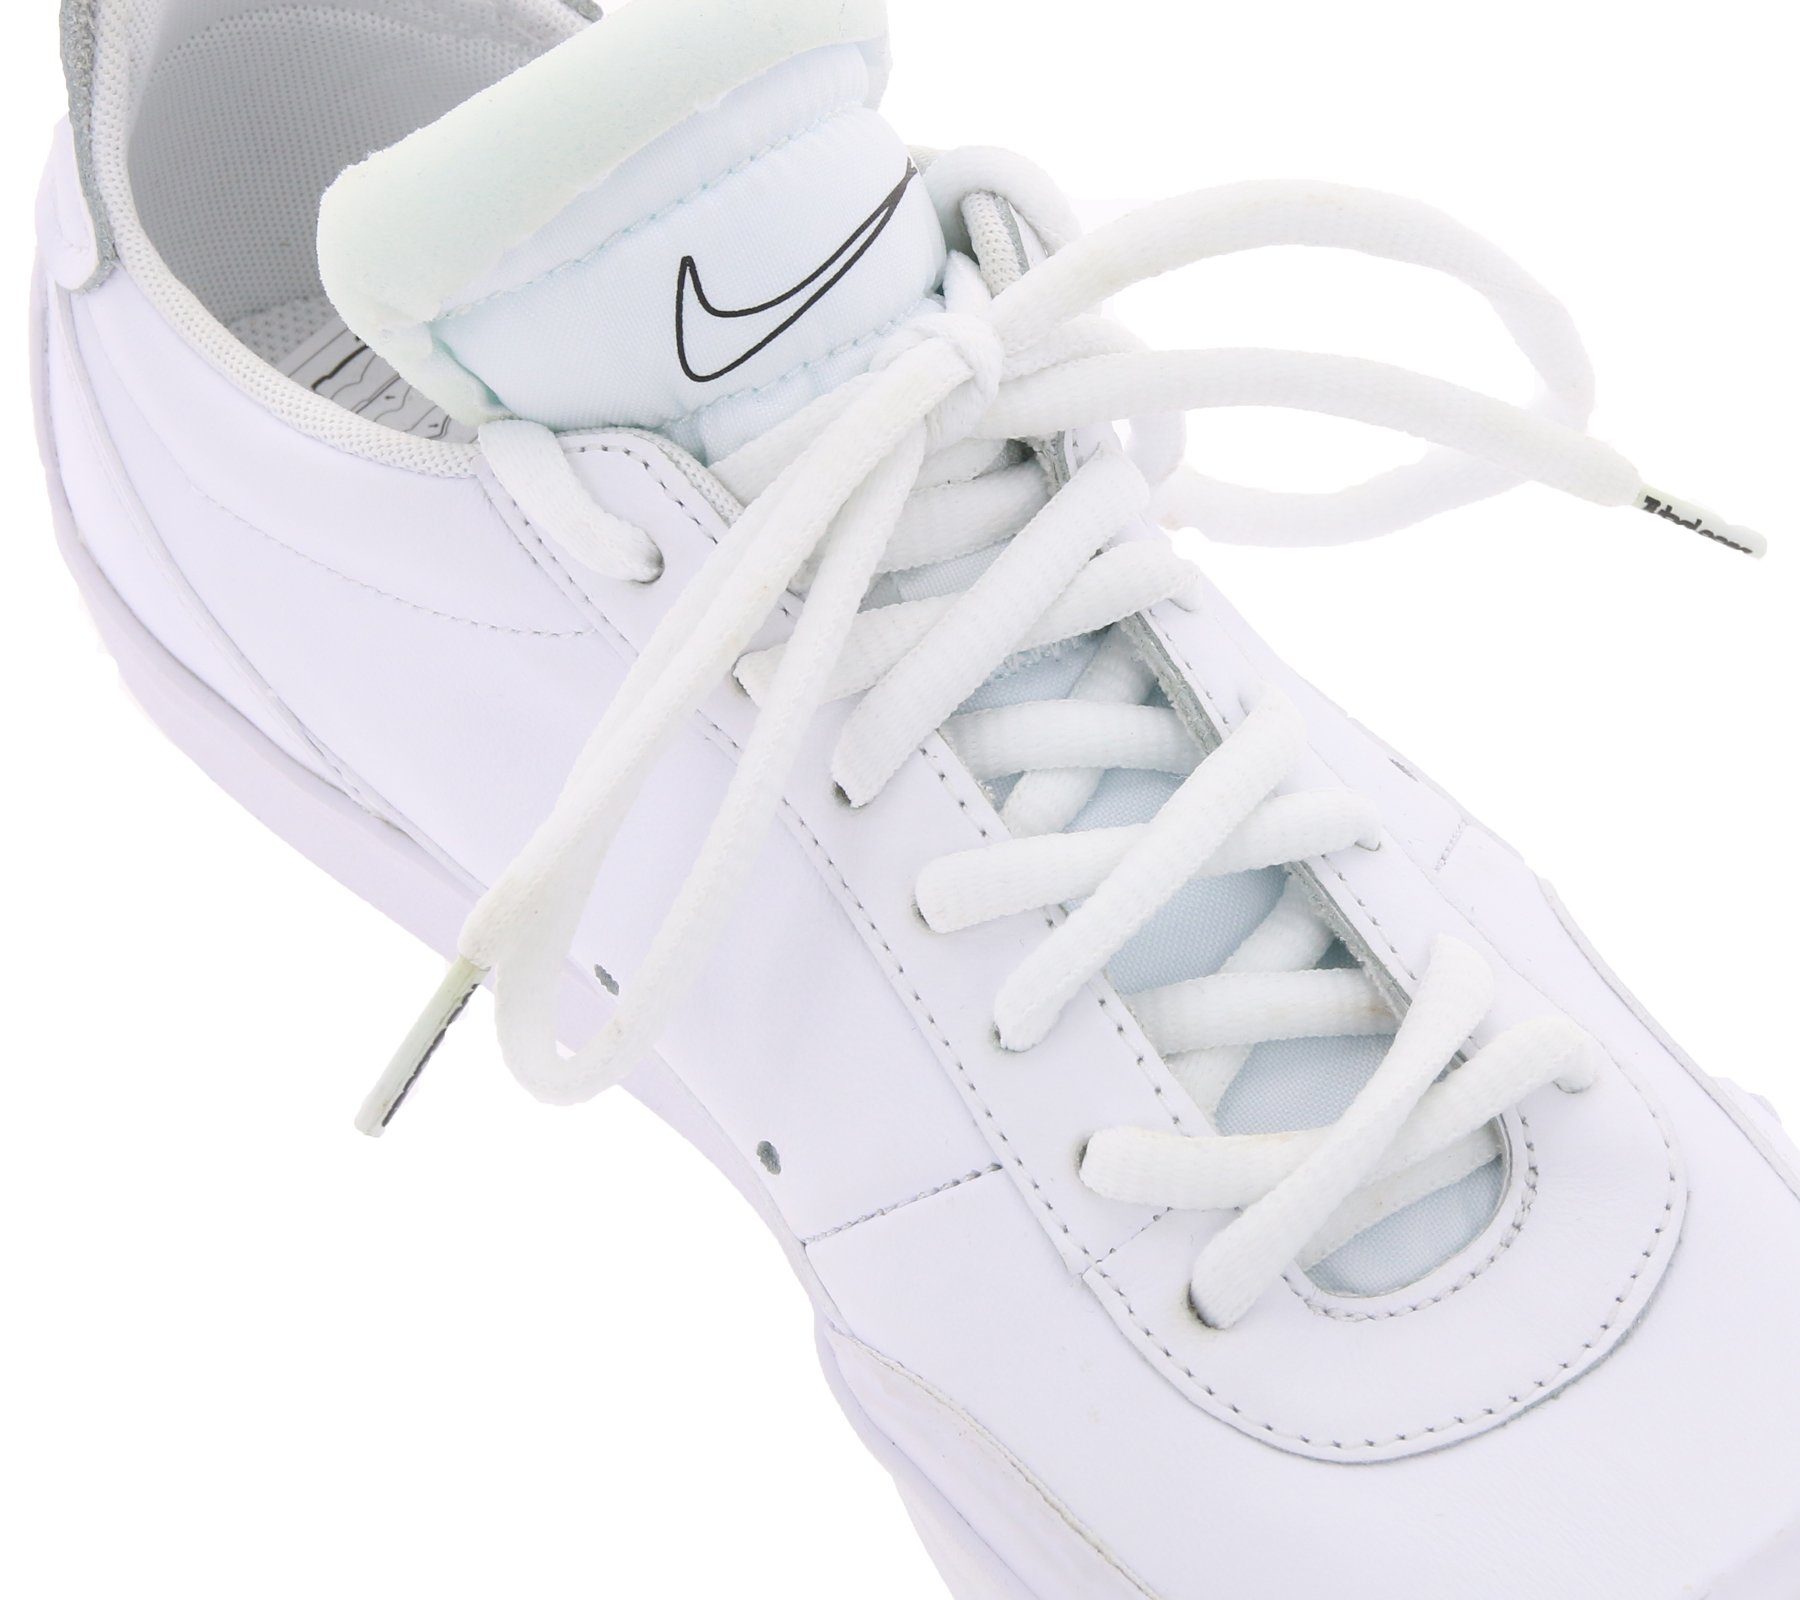 Schnürsenkel TubeLaces schlichte Schnürbänder Weiß Schuhband Tubelaces Schnürsenkel Schuh